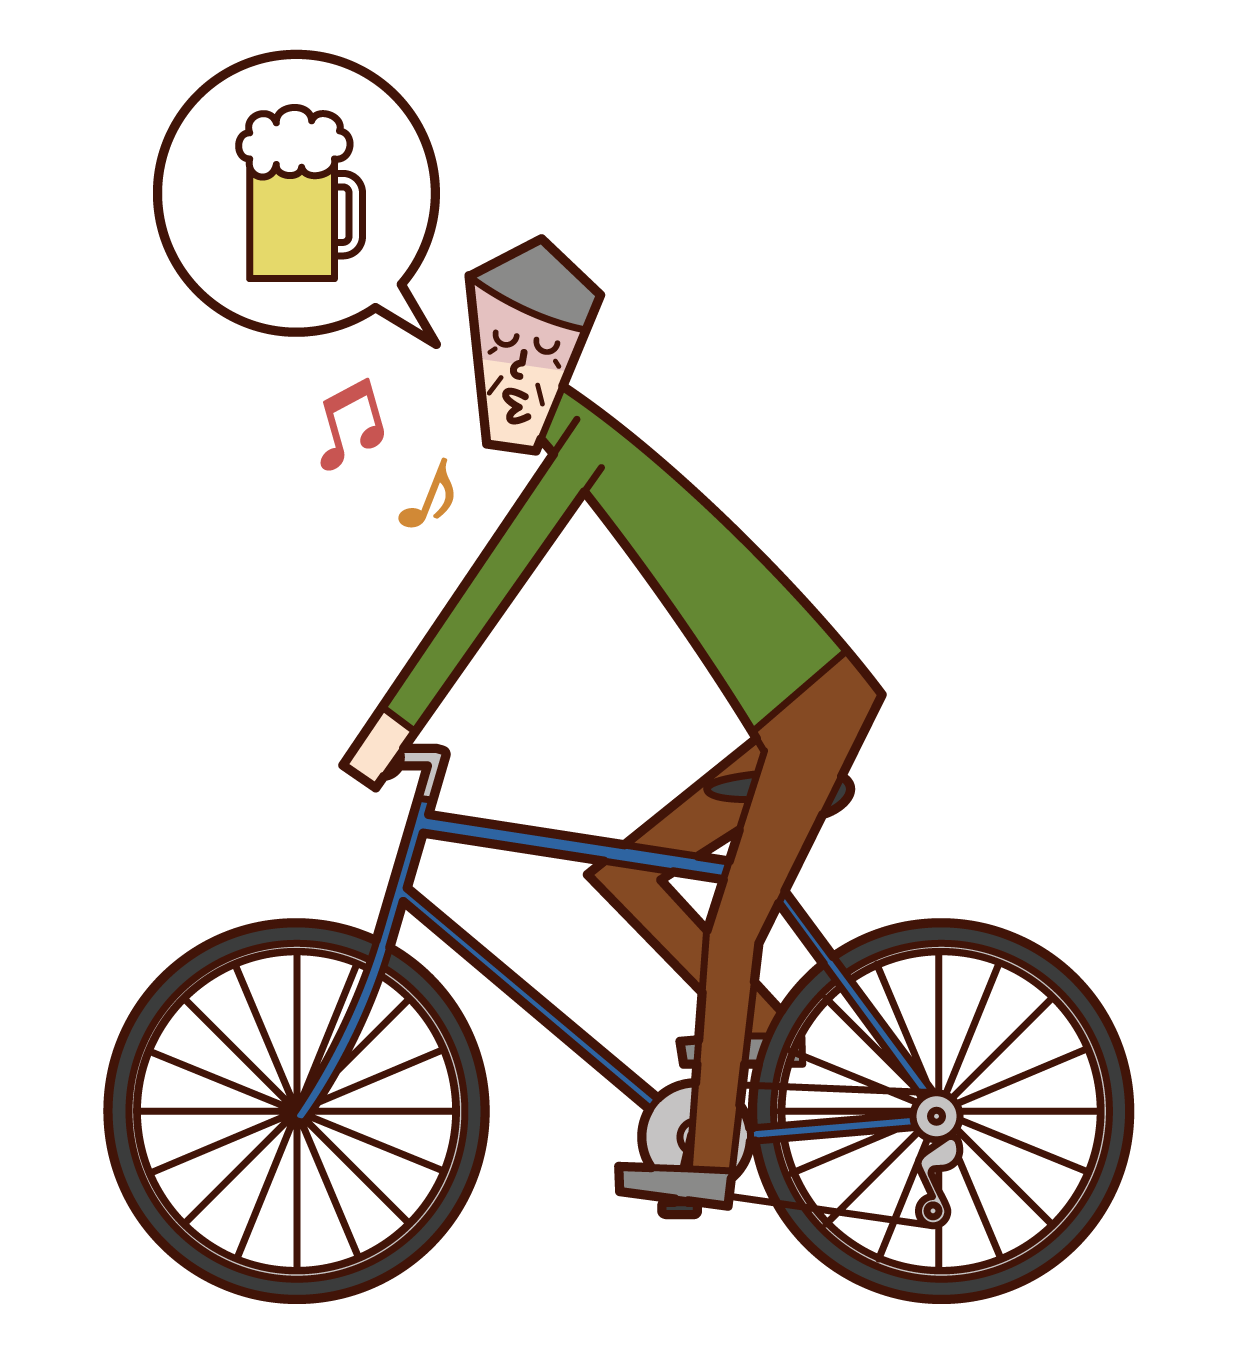 自転車で転倒する人 男性 のイラスト フリーイラスト素材 Kukukeke ククケケ